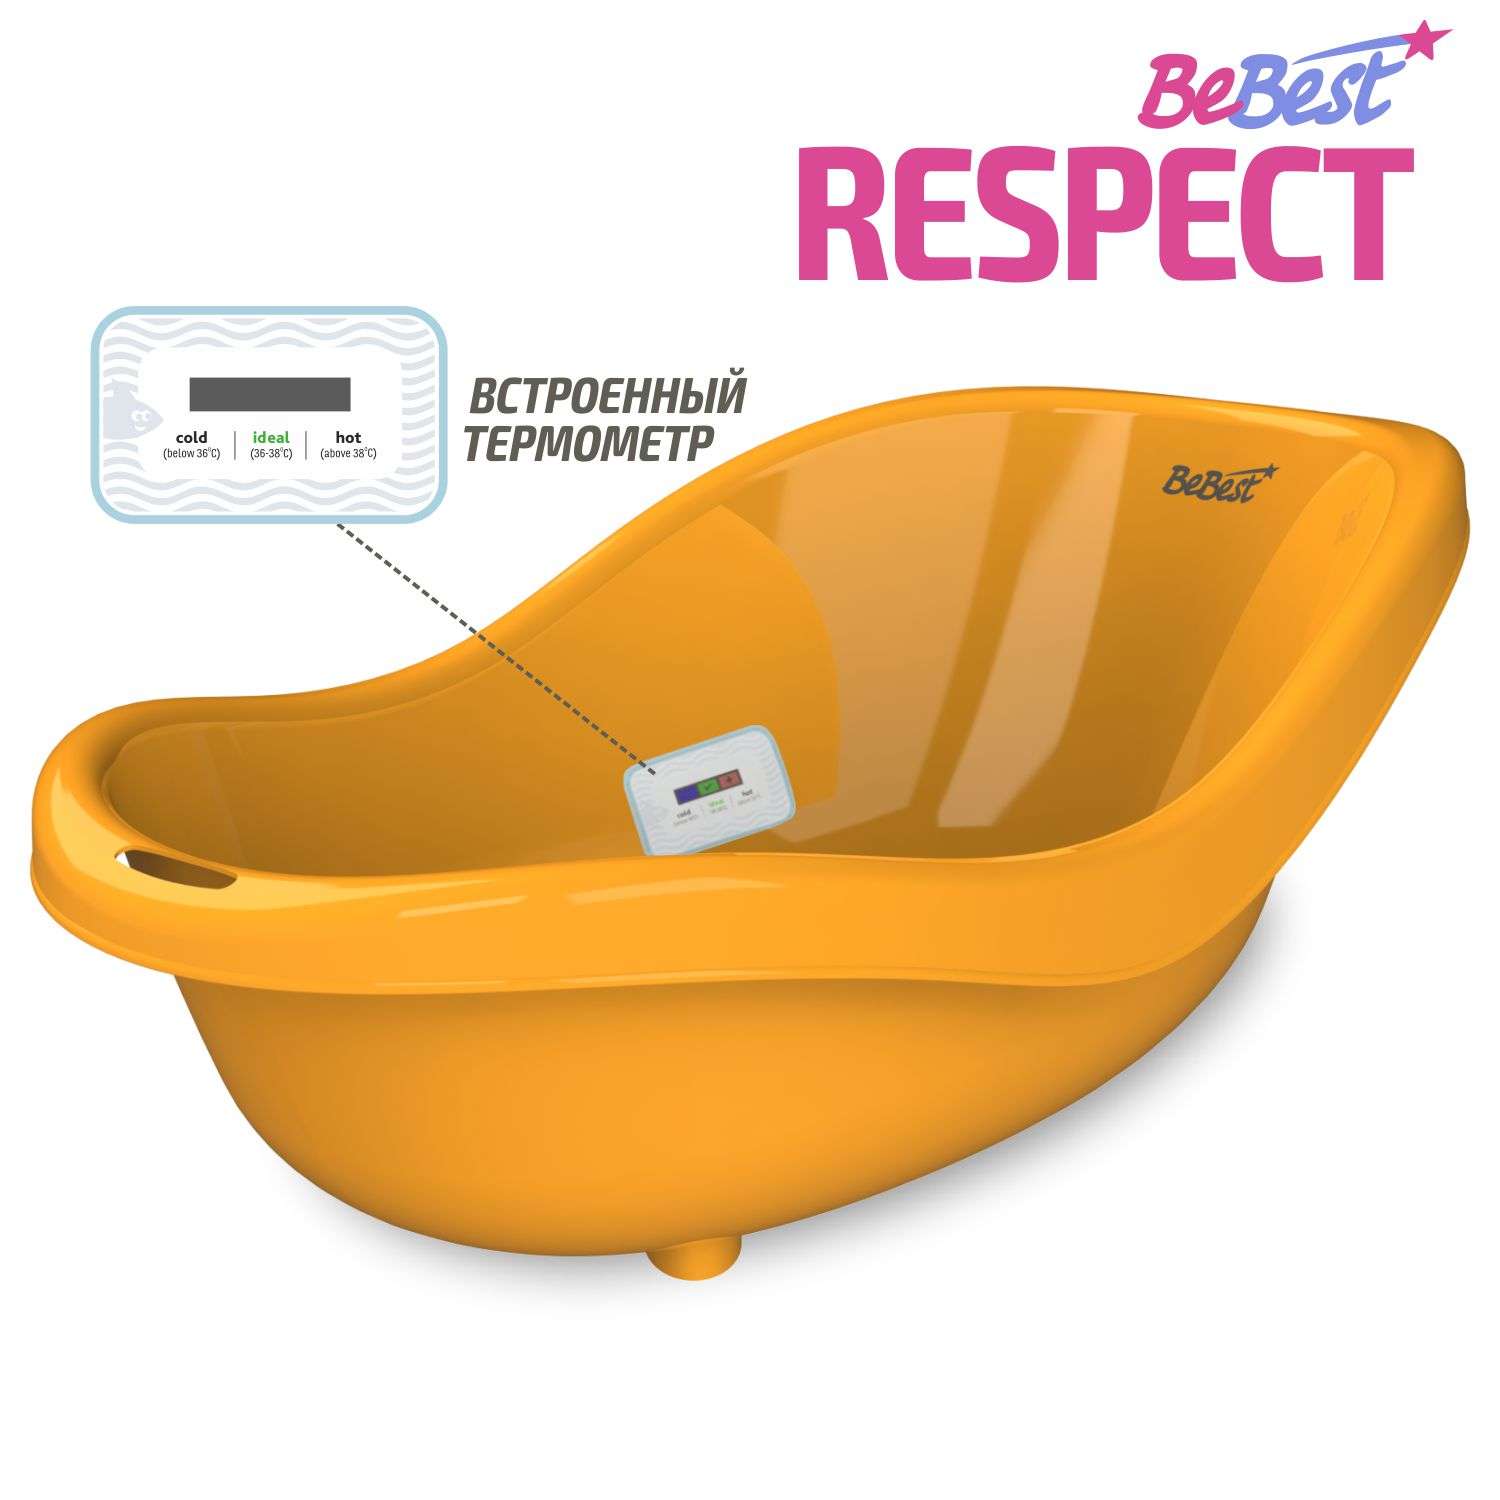 Ванночка для купания BeBest Respect с термометром оранжевый - фото 1